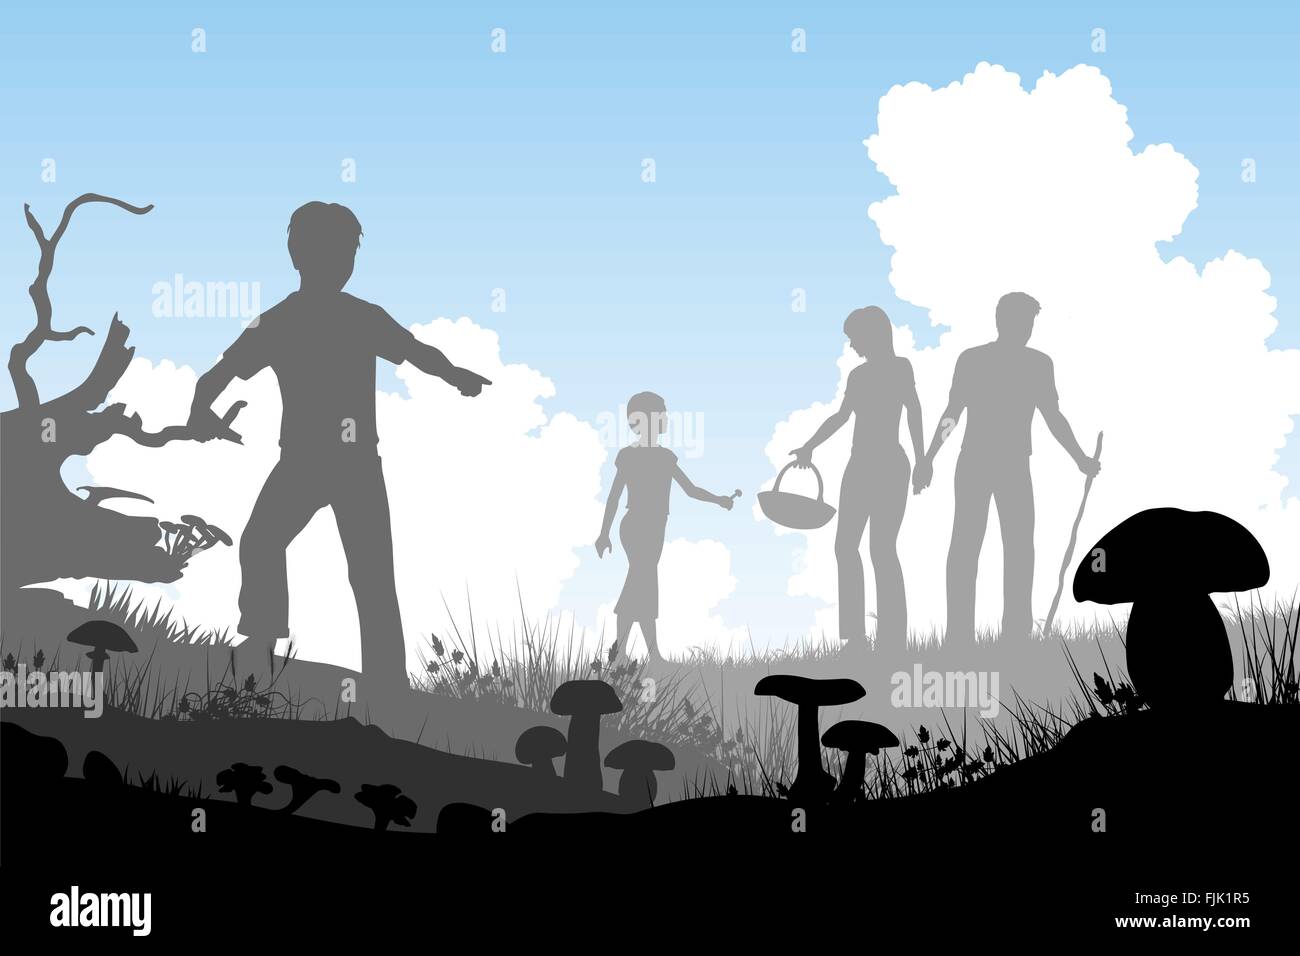 EPS8 bearbeitbare Ausschnitt Vektorgrafik einer Familie Jagd für Speisepilze mit Menschen und Pilze als separate Objekte Stock Vektor